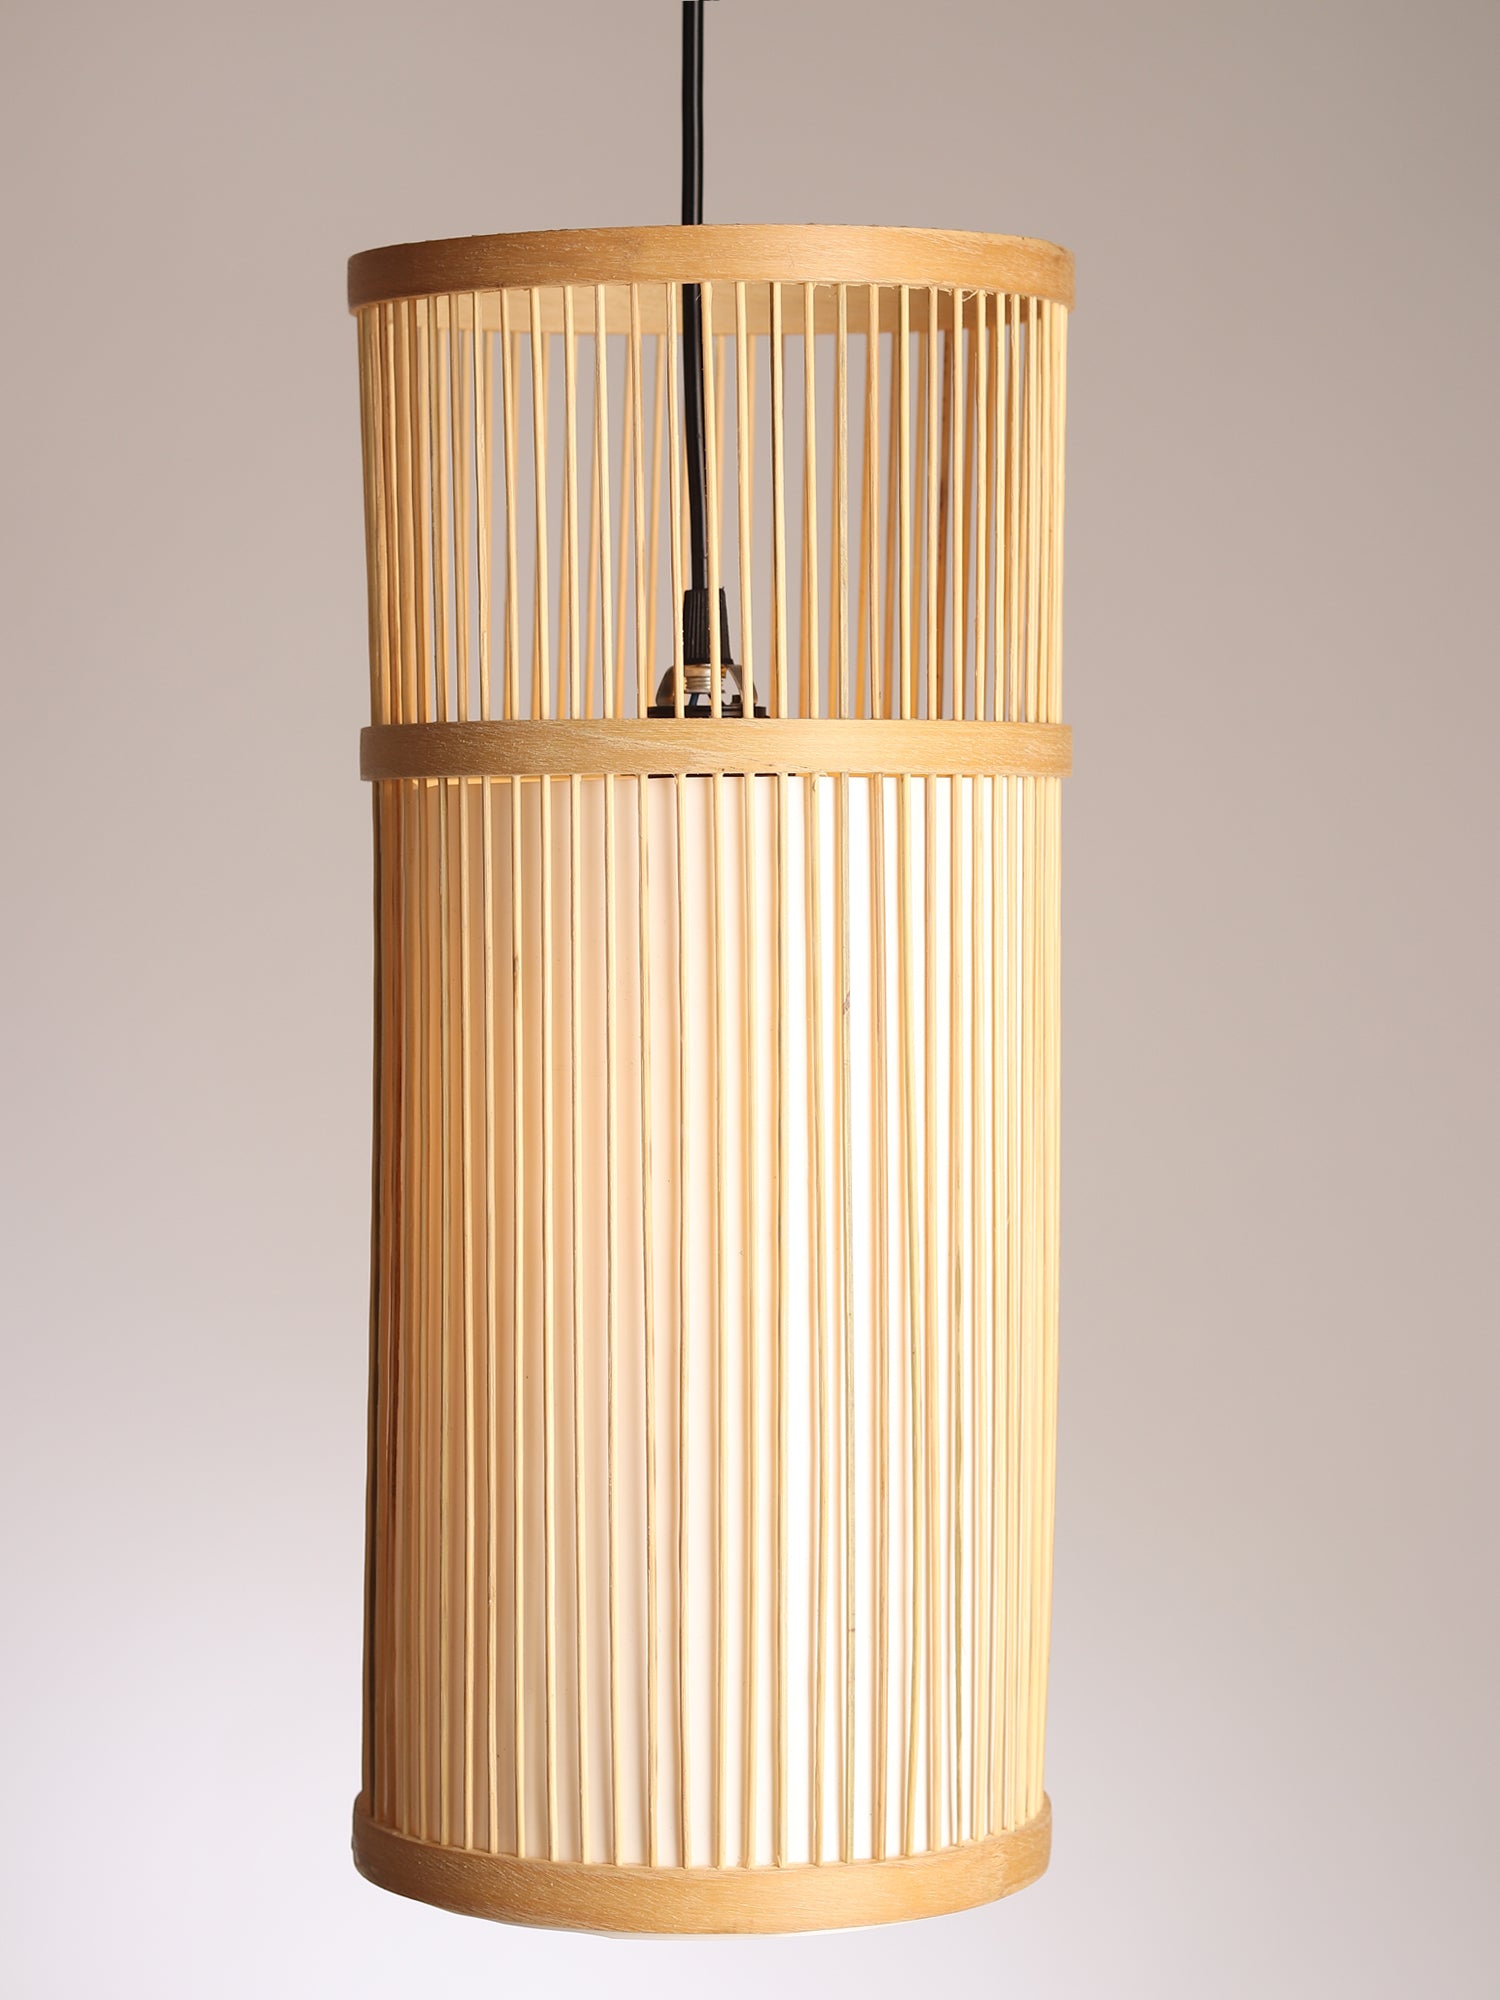  Rattan Tabletop Lamp